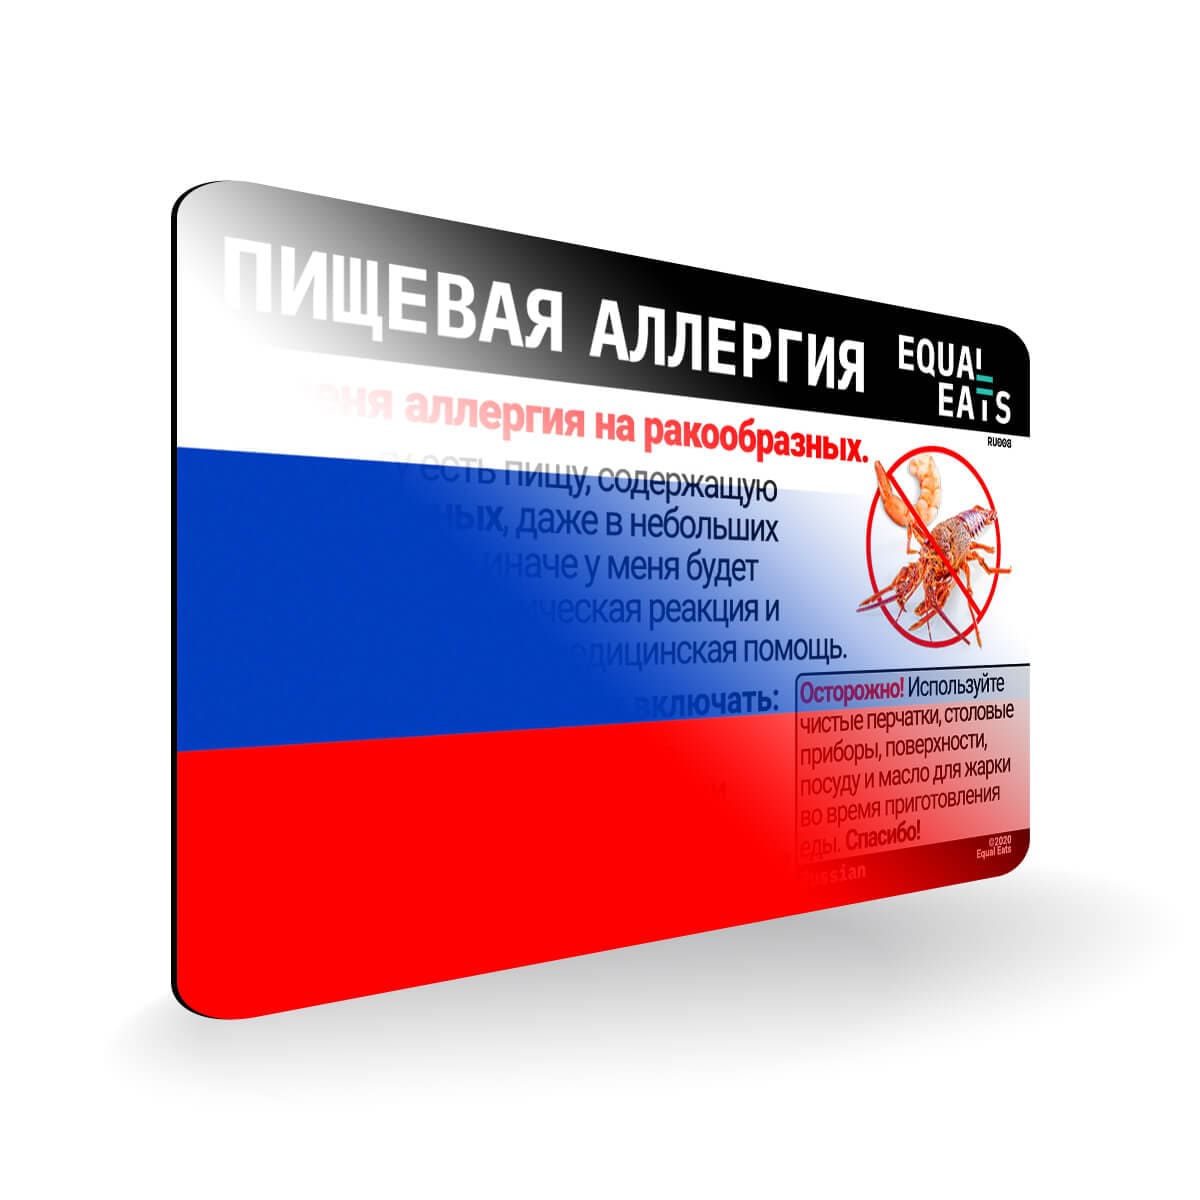 Crustacean Allergy in Russian. Crustacean Allergy Card for Russia